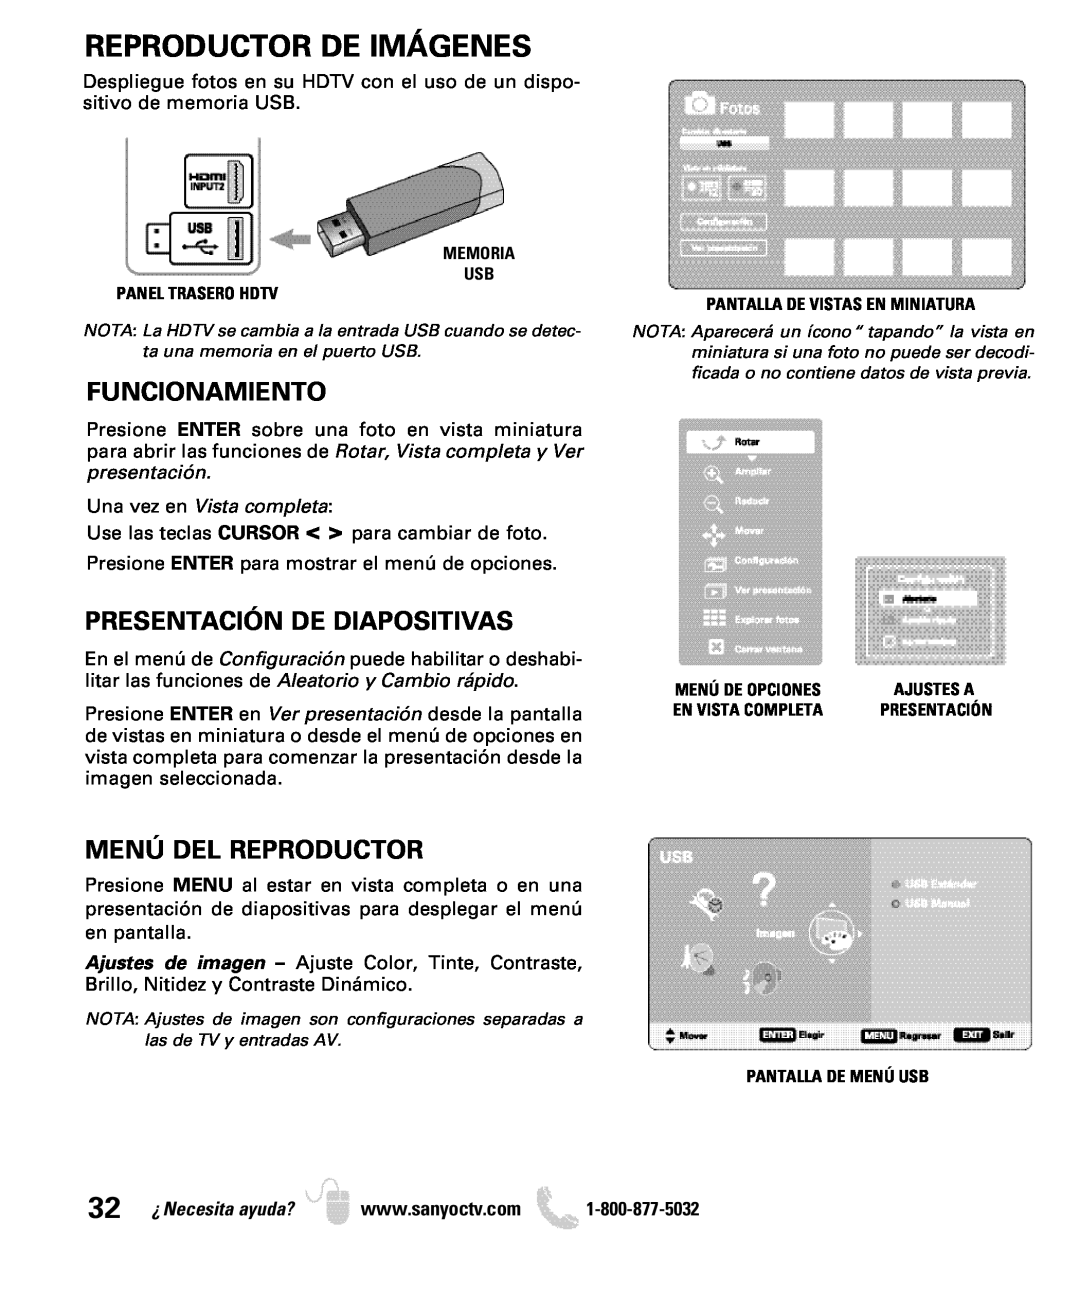 Sanyo DP26649, DP19649 Reproductor De Imágenes, Funcionamiento, Presentación De Diapositivas, Menú Del Reproductor 